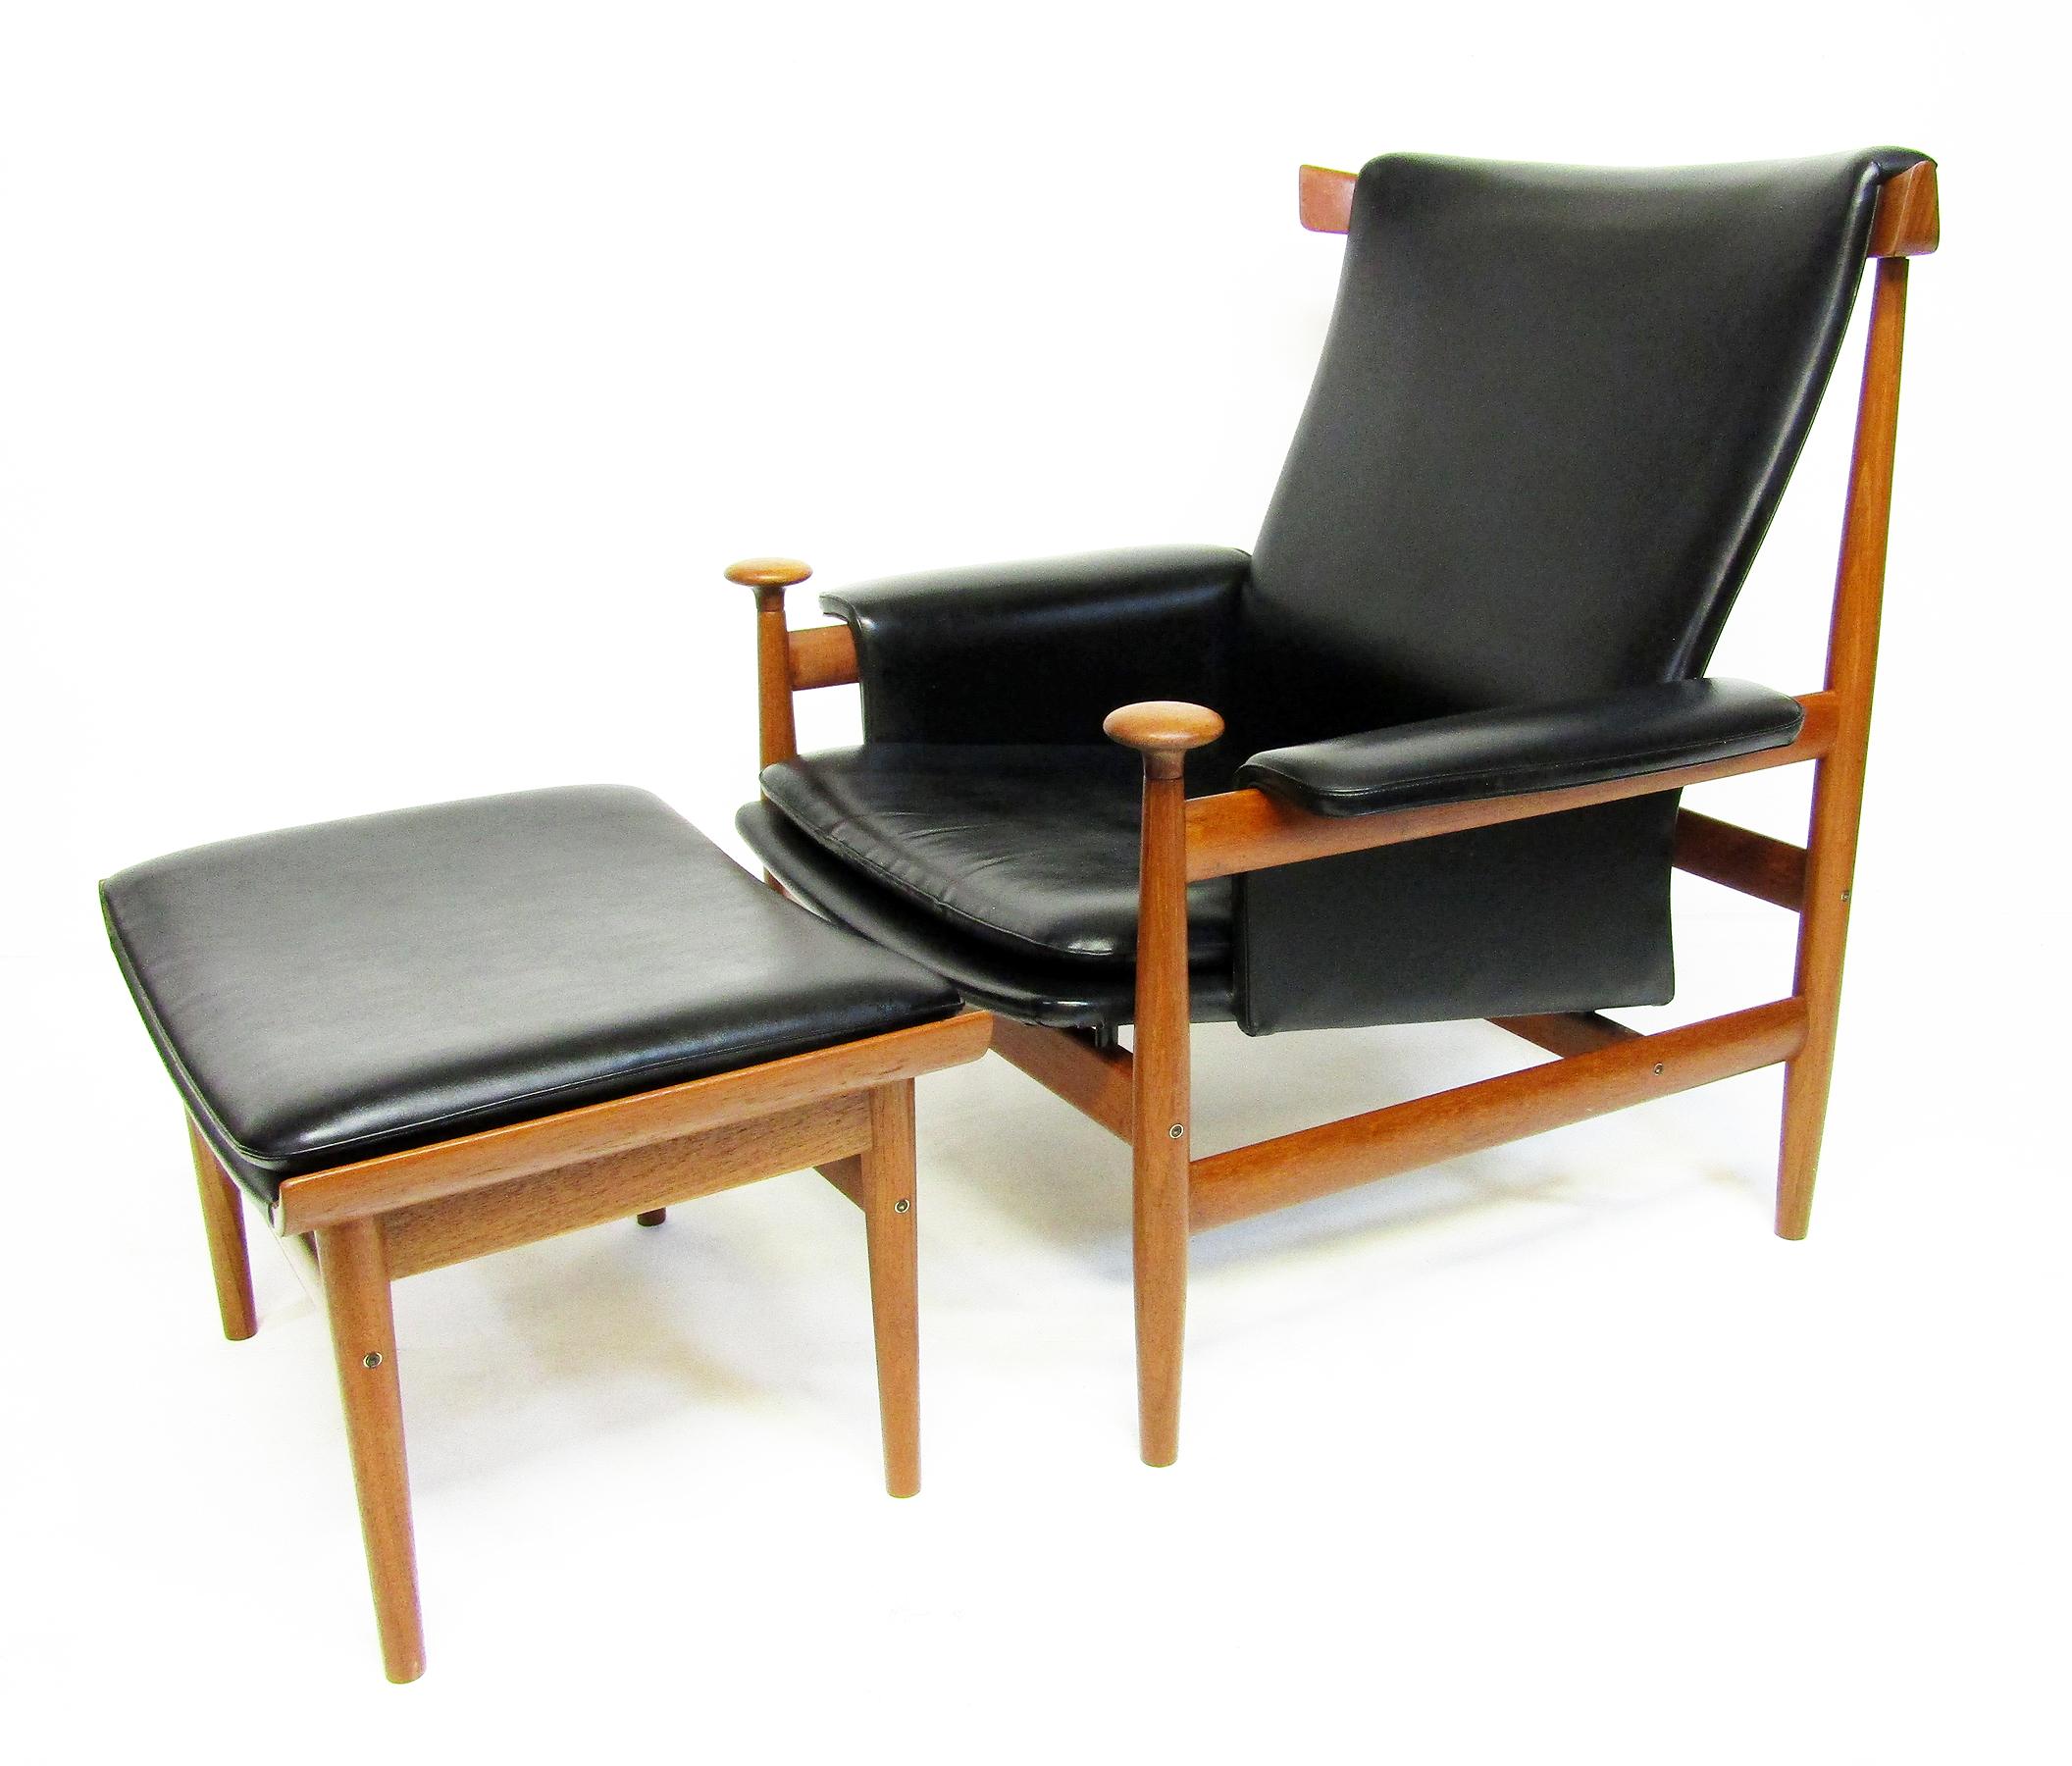 1960s Danish Bwana Chair & Ottoman By Finn Juhl In Teak & Skai For Sale 3